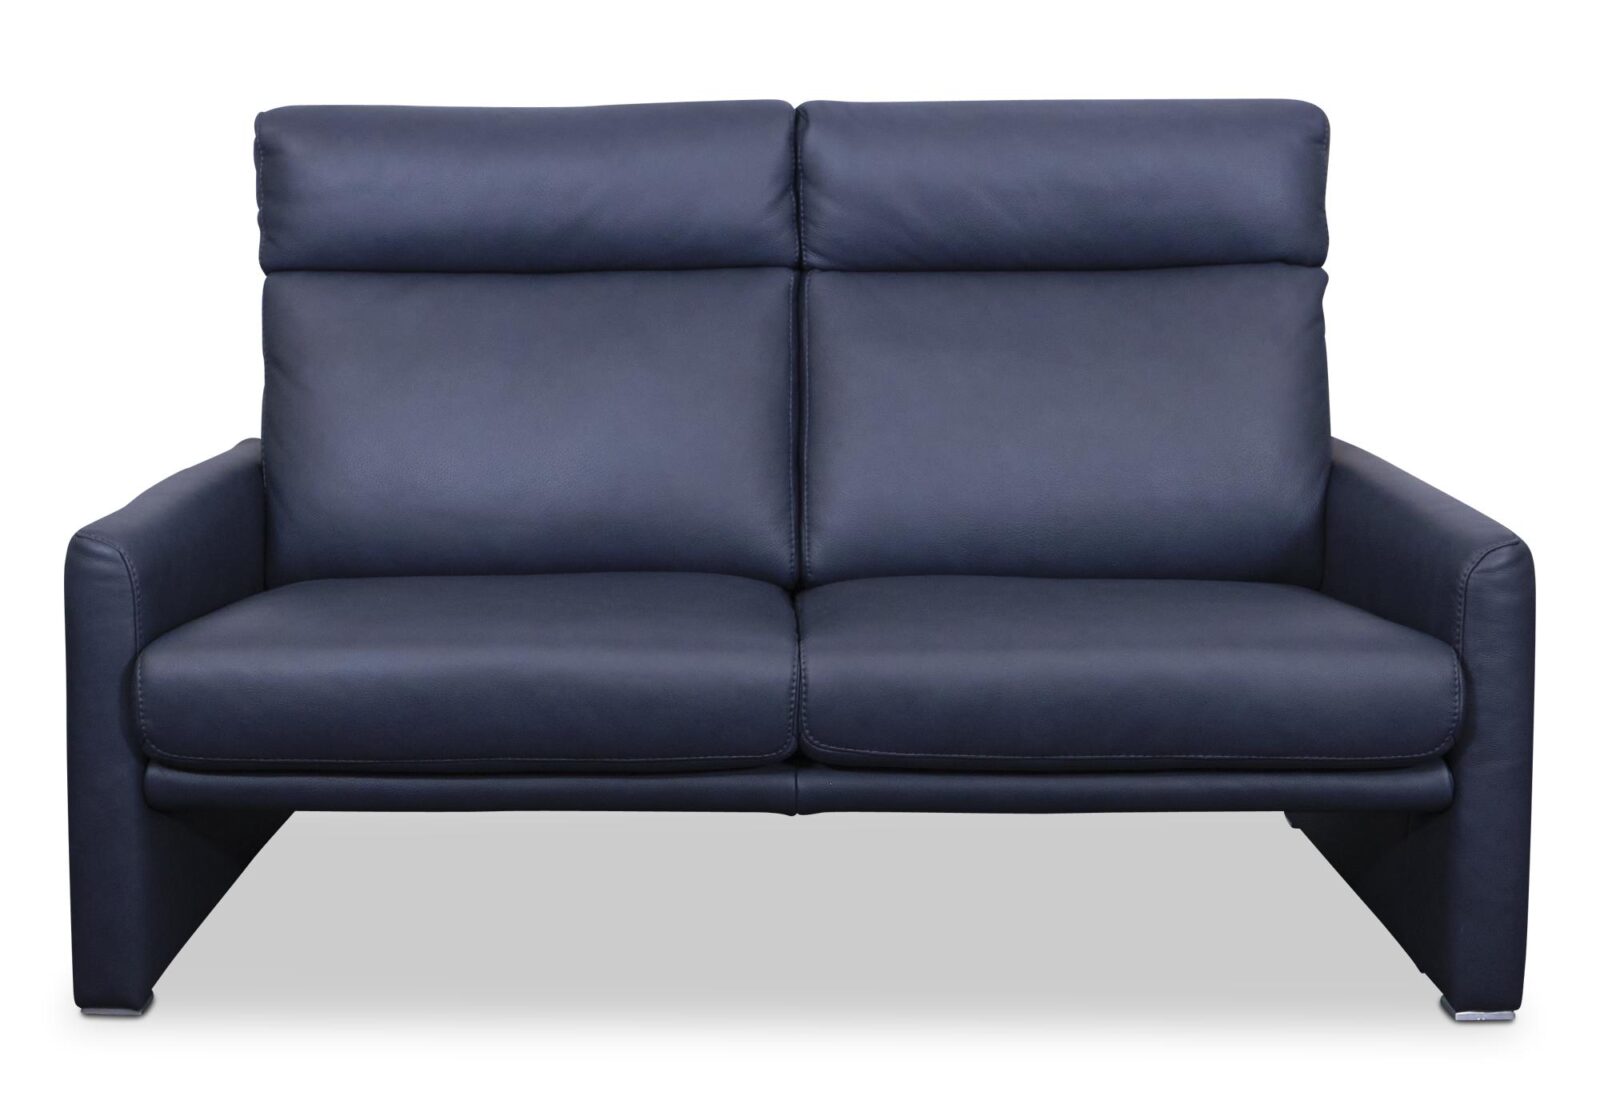 2er Sofa Cosmo mit hohem Rücken. Bezug: Leder. Farbe: Blau. Erhältlich bei Möbel Gallati.